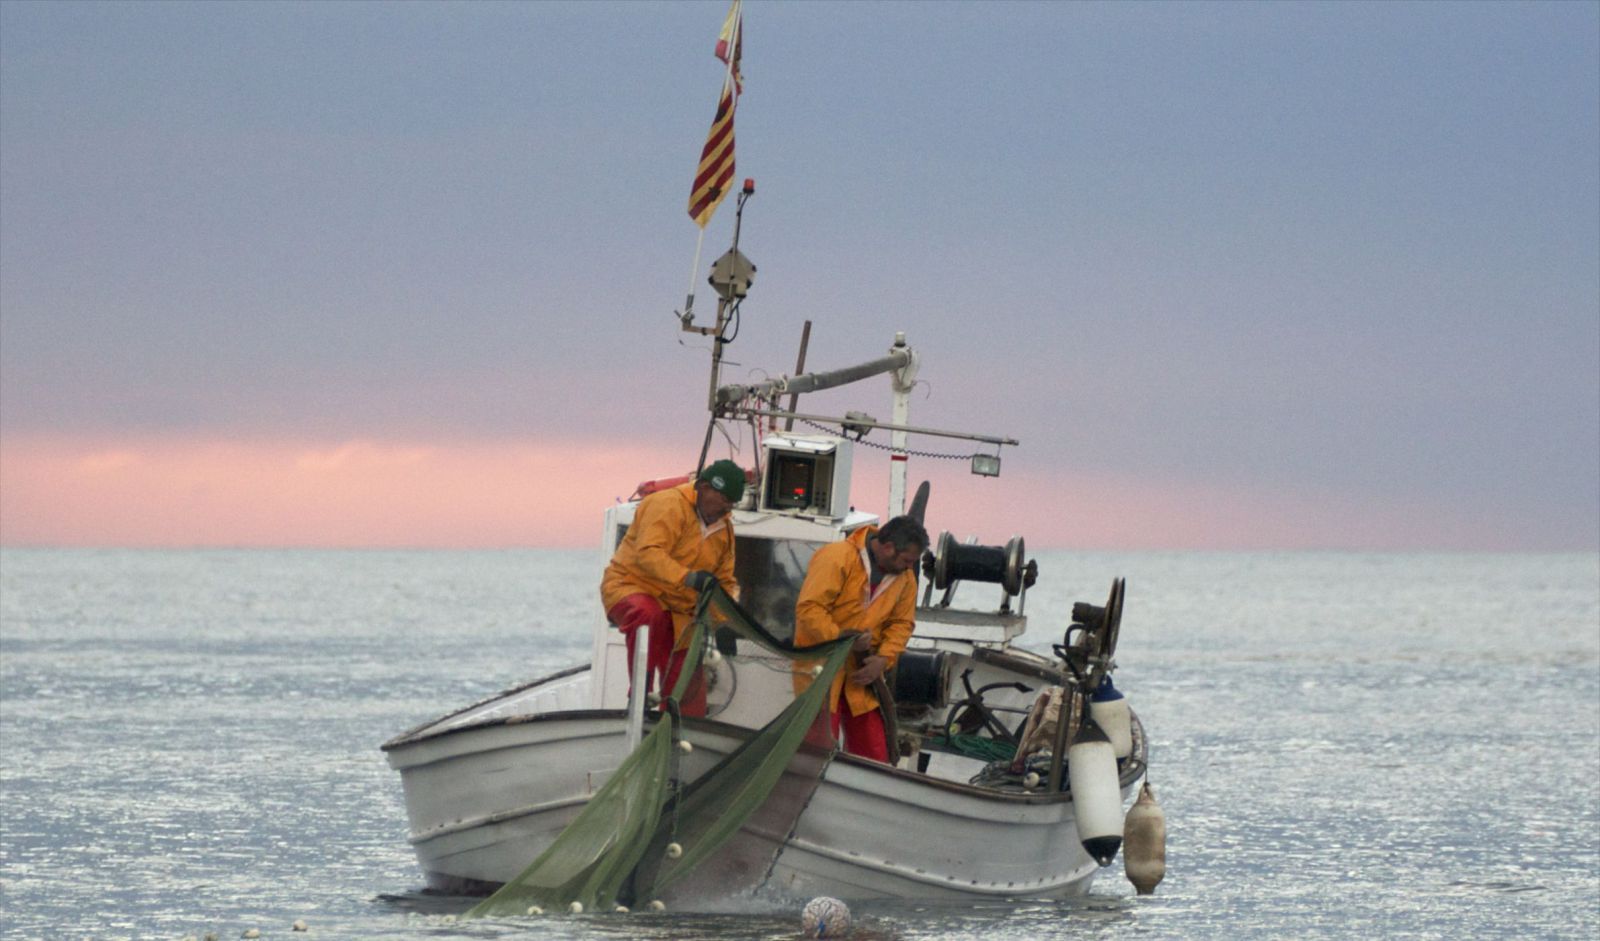 Pescadores de ‘gerret’ echando sus redes en Cala Boix, Sant Carles.